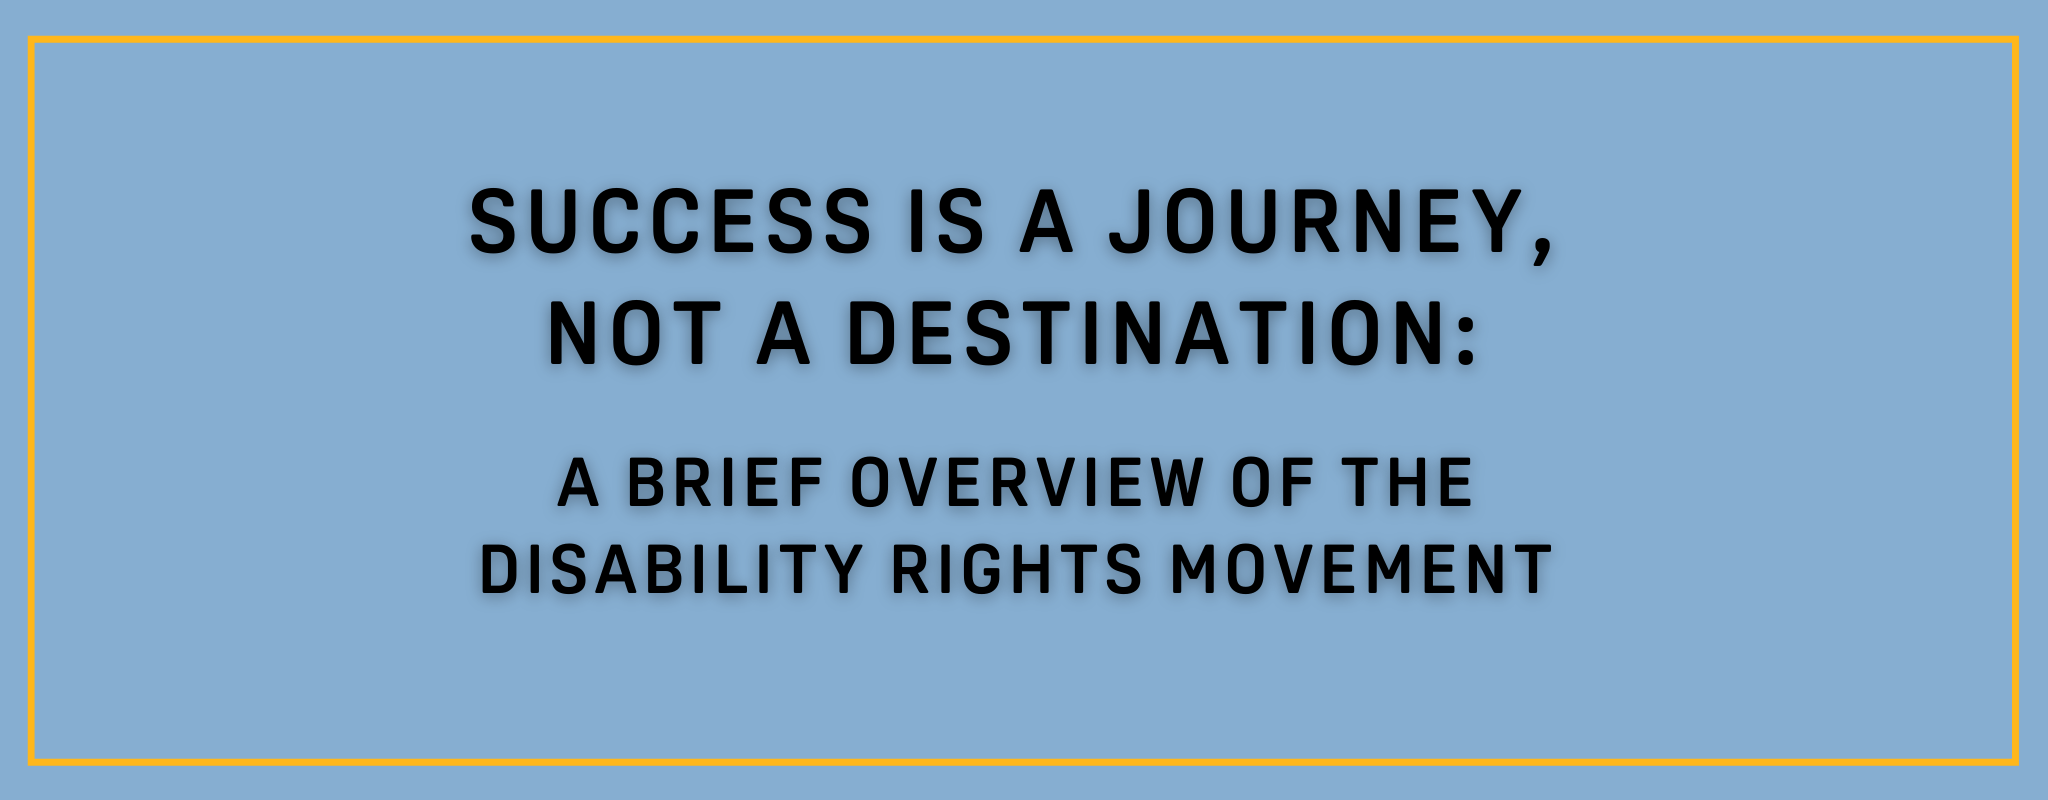 El éxito es un viaje, no un destino: una breve descripción del movimiento por los derechos de las personas con discapacidad